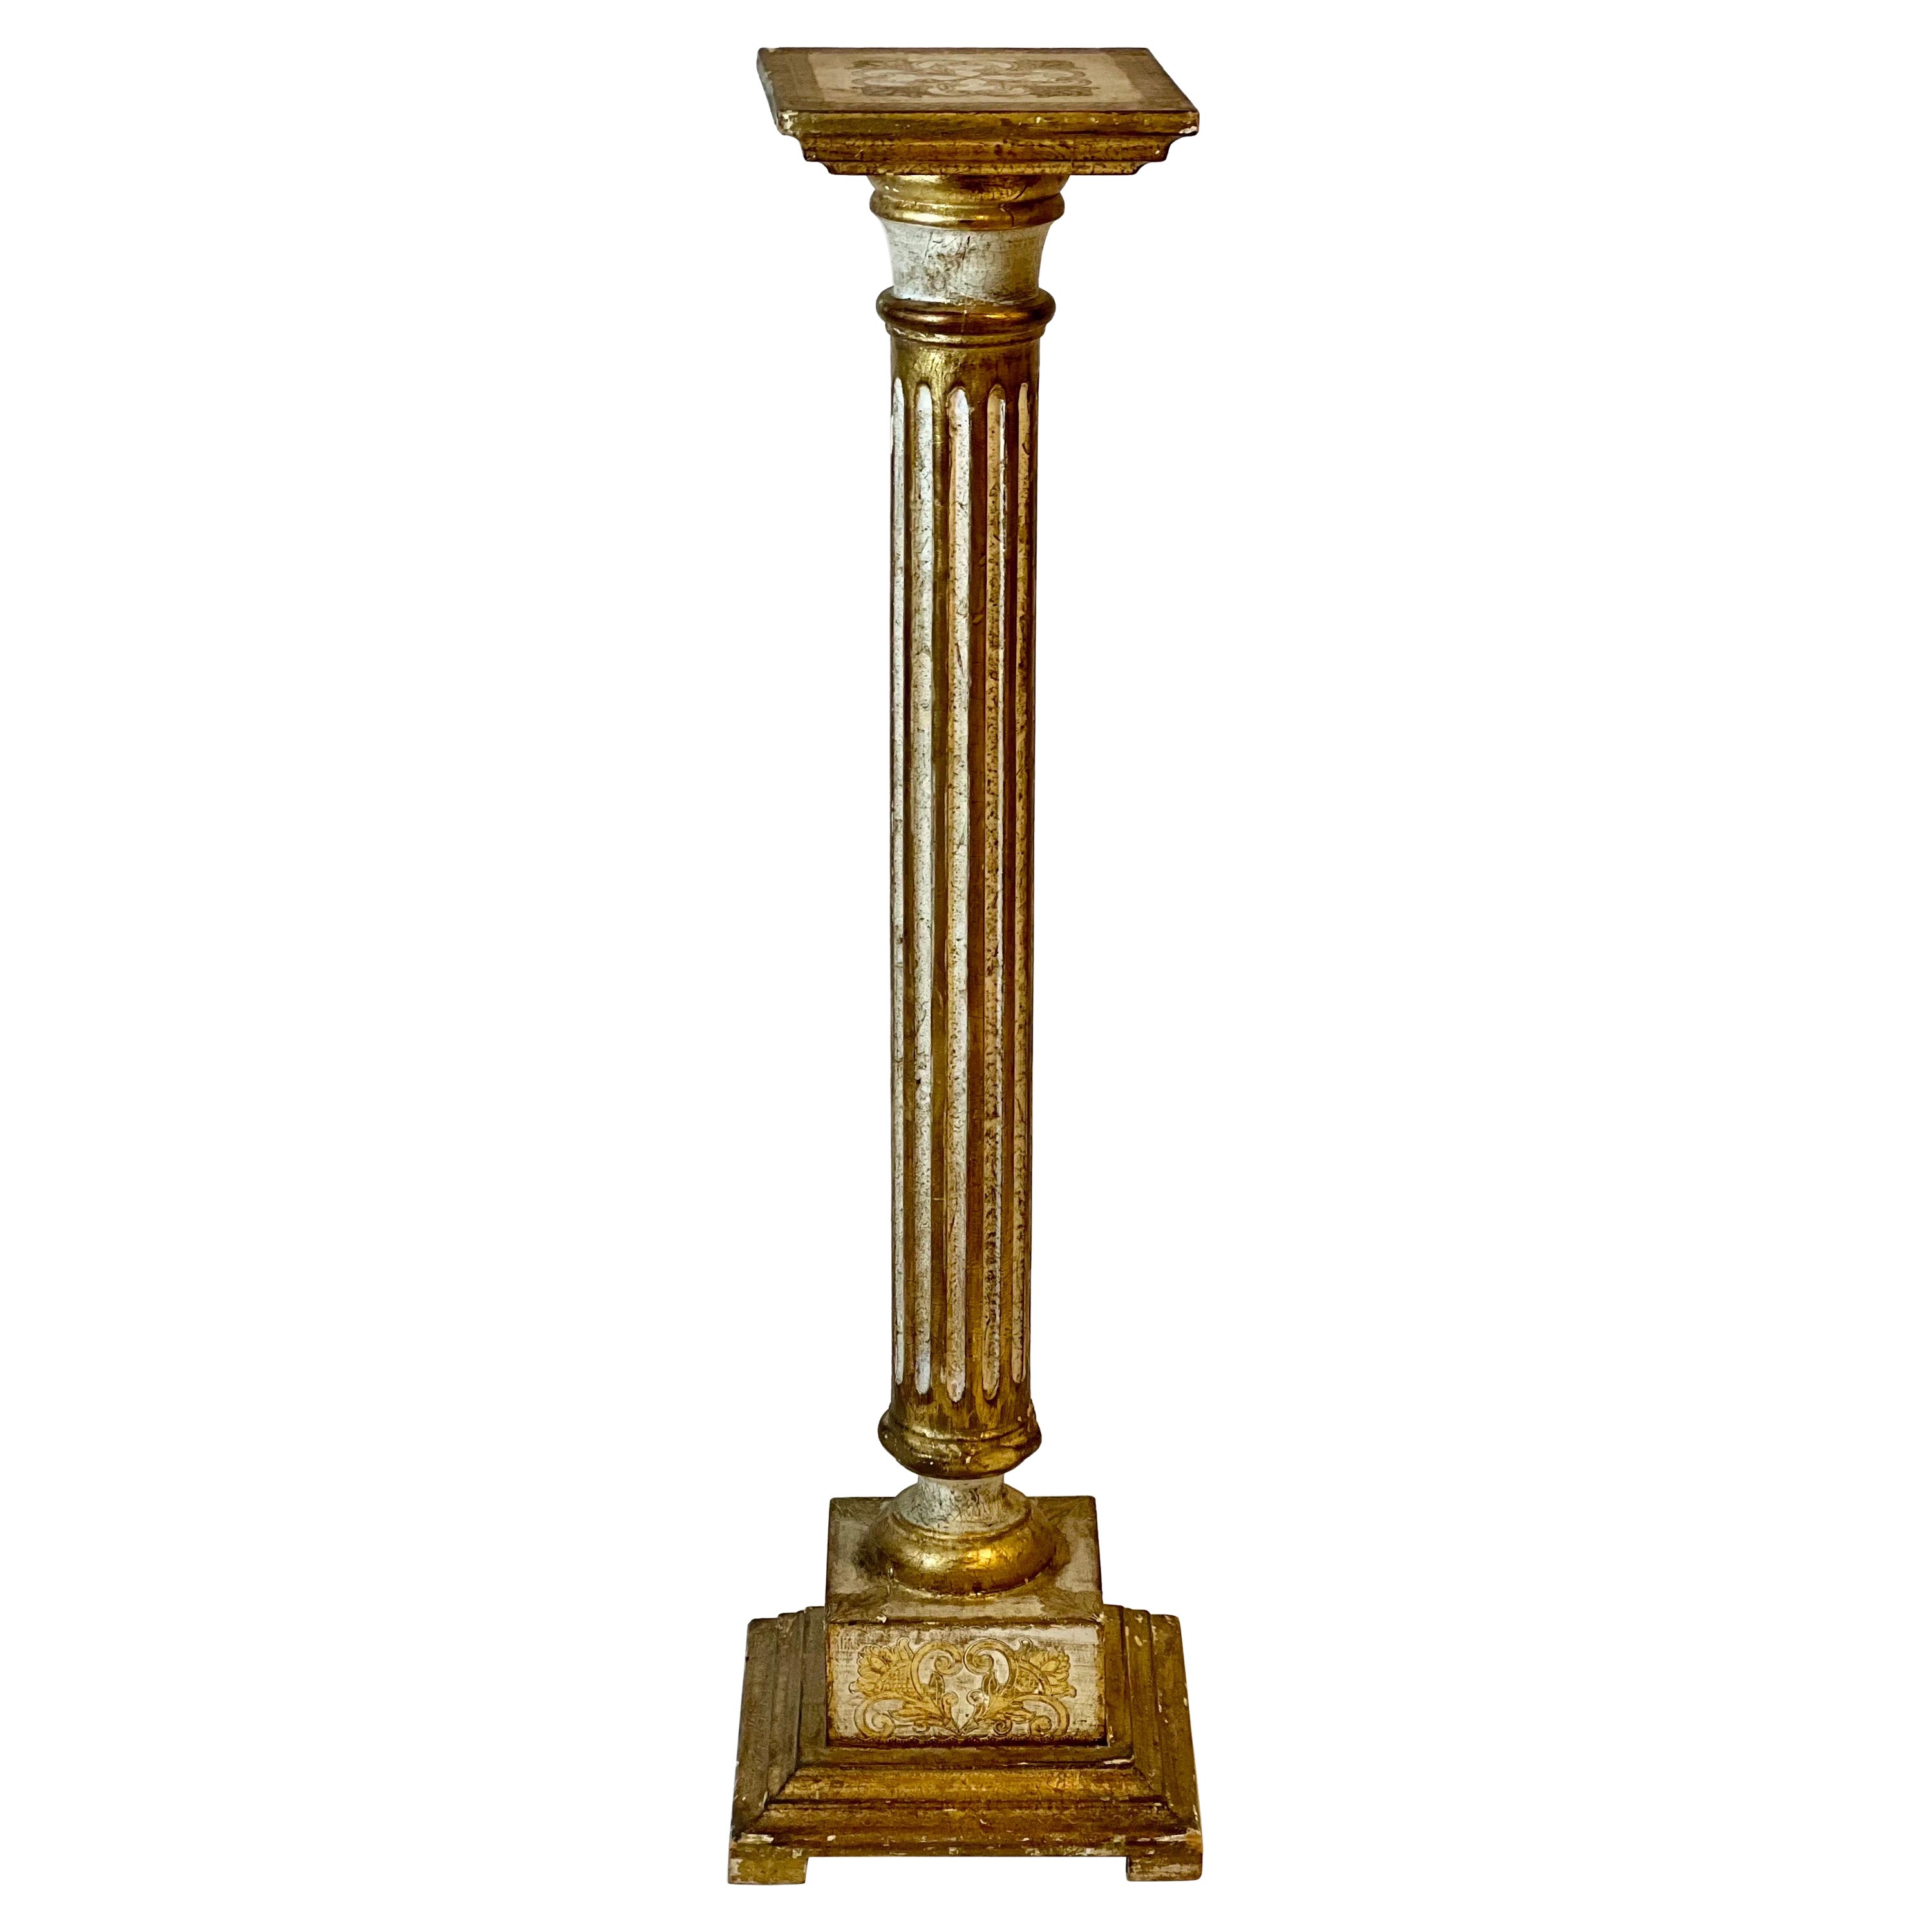 The Pedestal, colonne cannelée de style néoclassique florentin, peinte en crème et en or doré